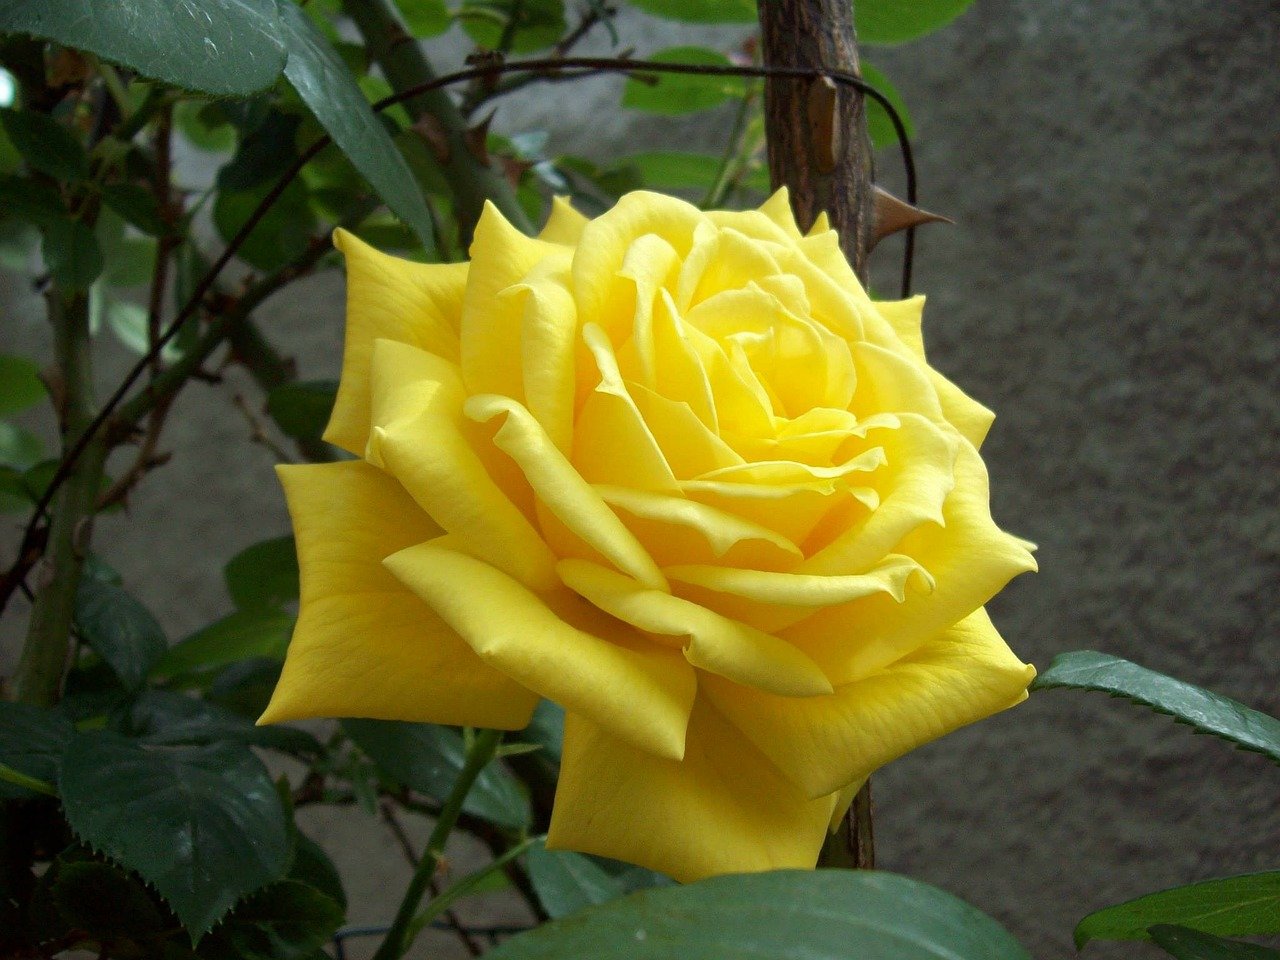 Роза тара эквадор